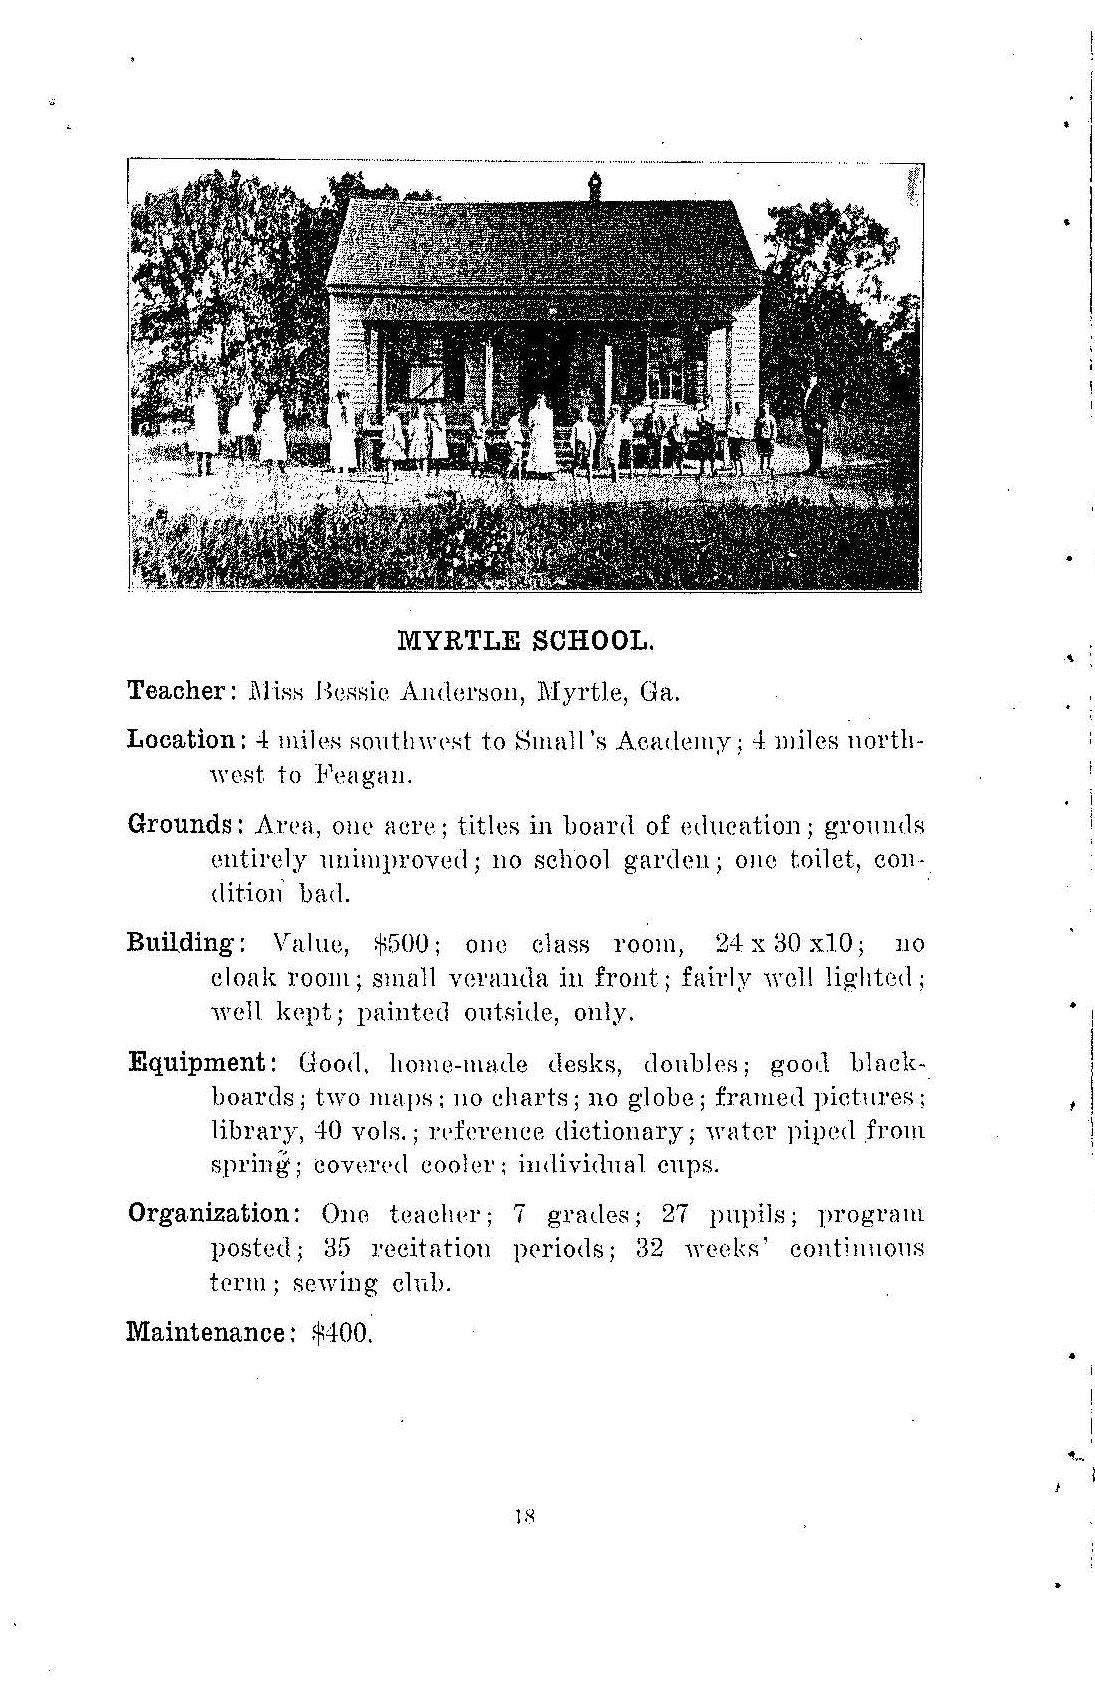 Myrtle School